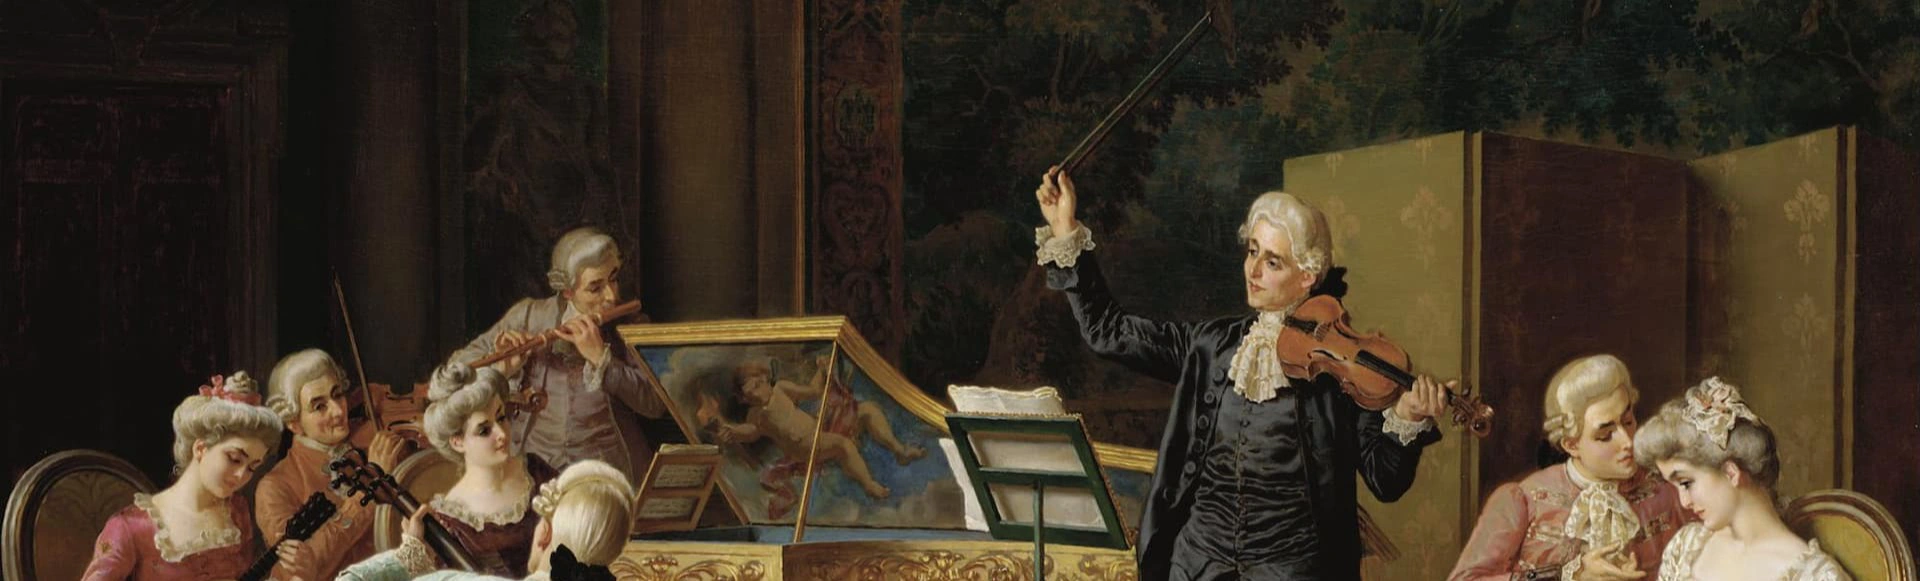 История музыкальных стилей: Странности барокко